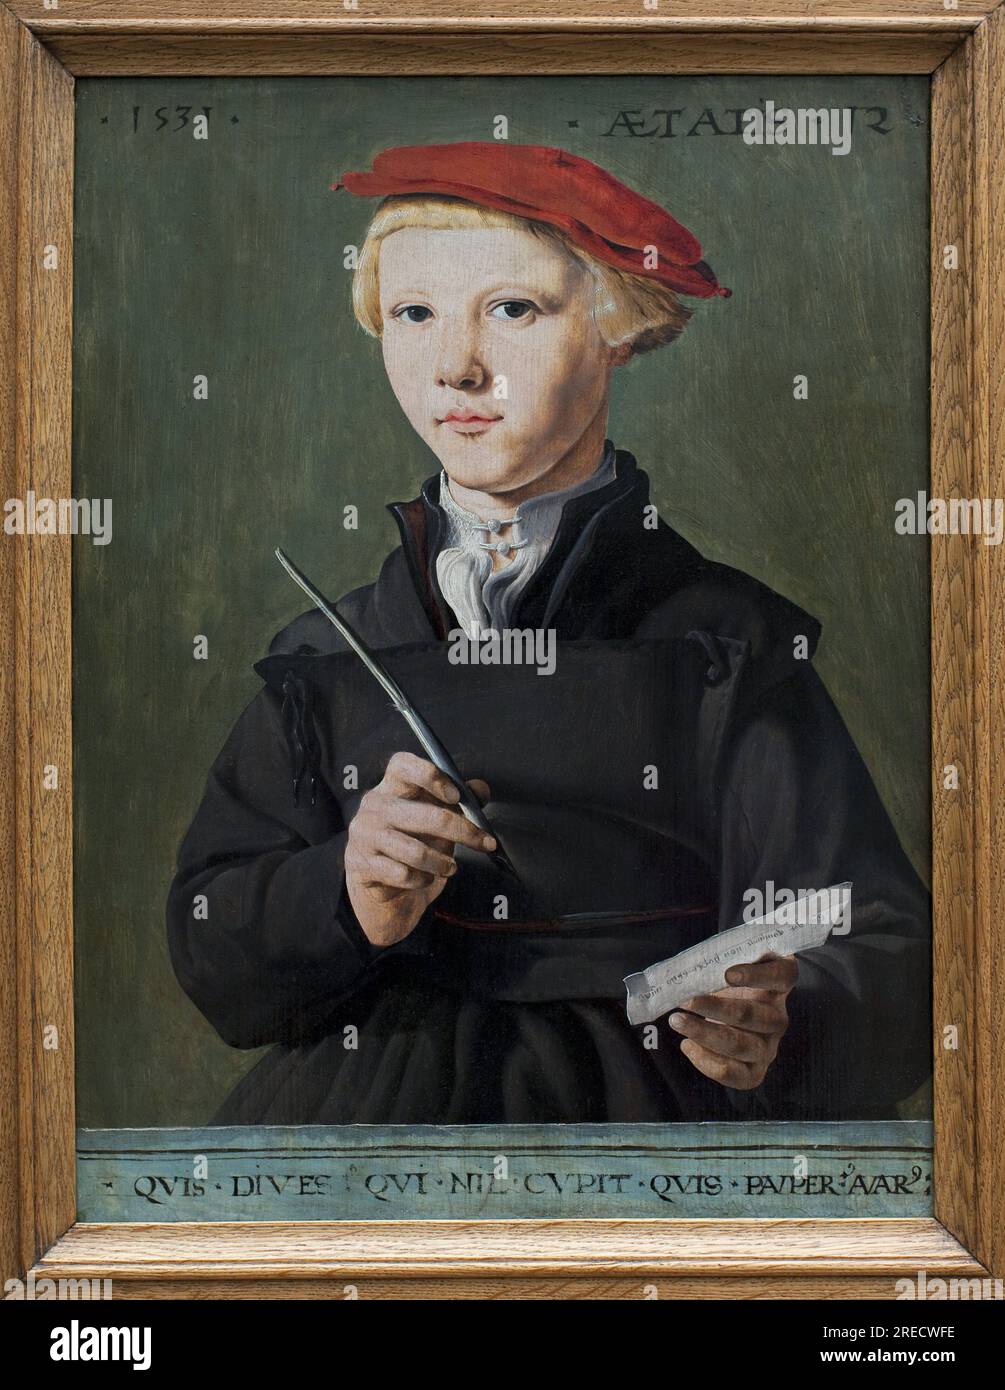 Portrait d'un jeune ecolier. peinture de Jan Van Scorel (1495-1562), huile sur bois, 1531. Art flamand, 16e siecle. Musee des Beaux Arts de Rotterdam (Pays Bas). Stock Photo